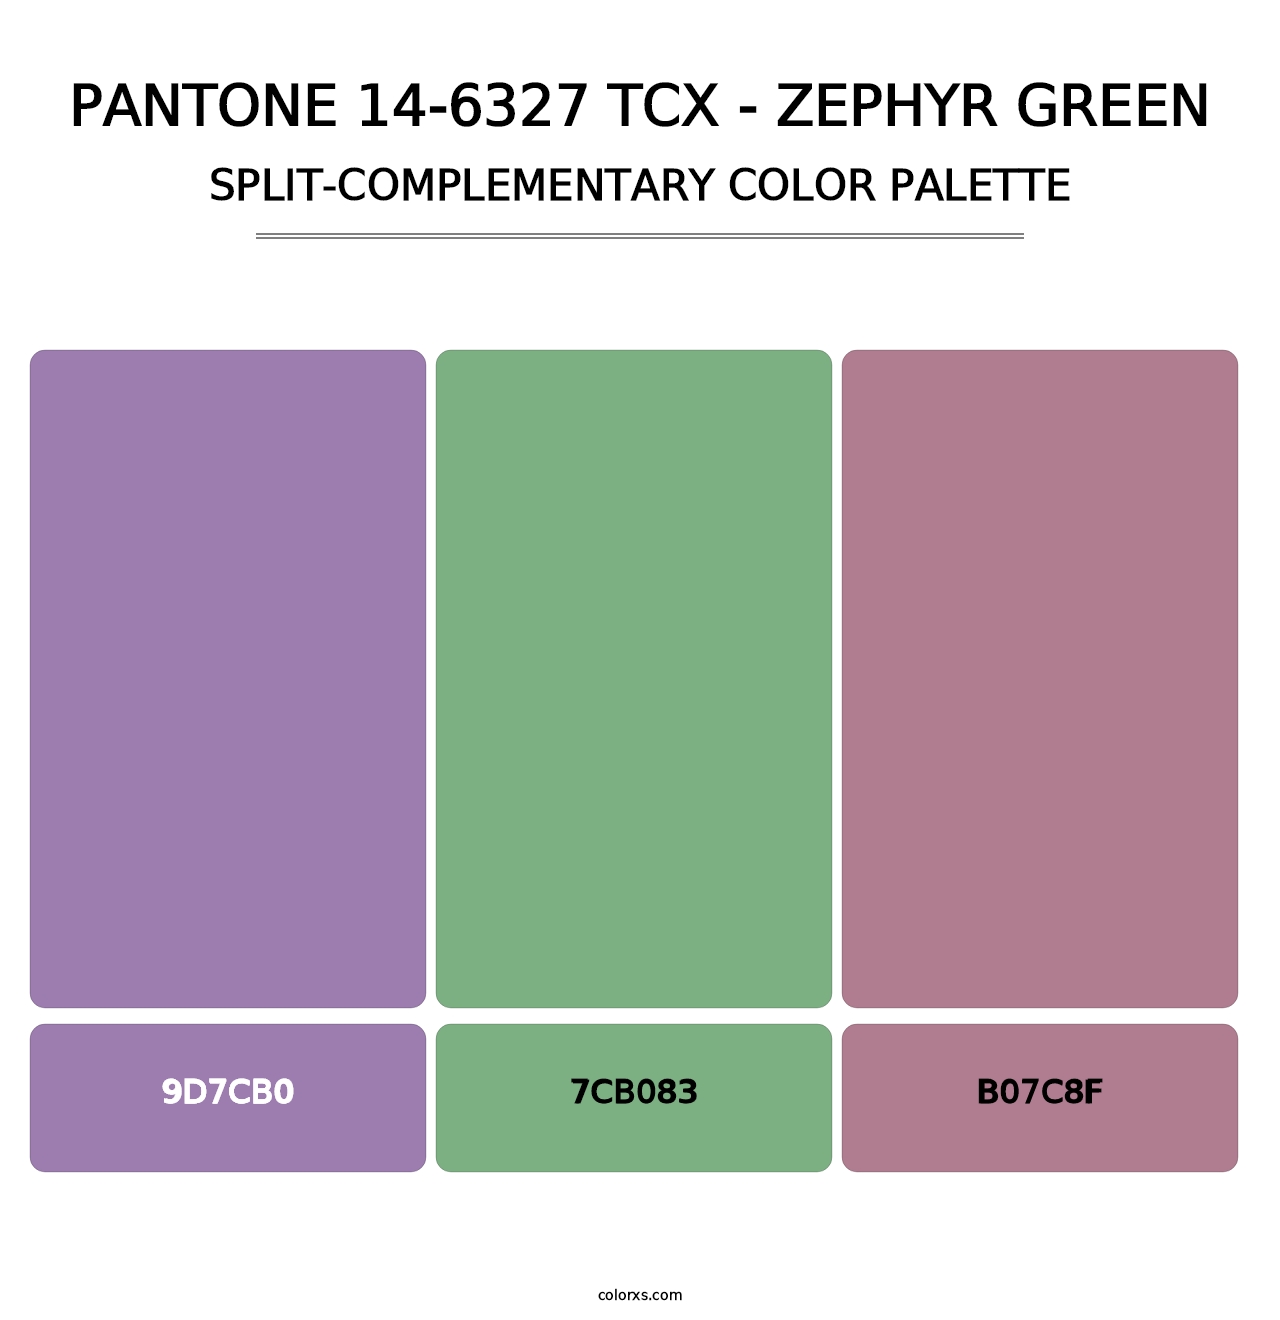 PANTONE 14-6327 TCX - Zephyr Green - Split-Complementary Color Palette